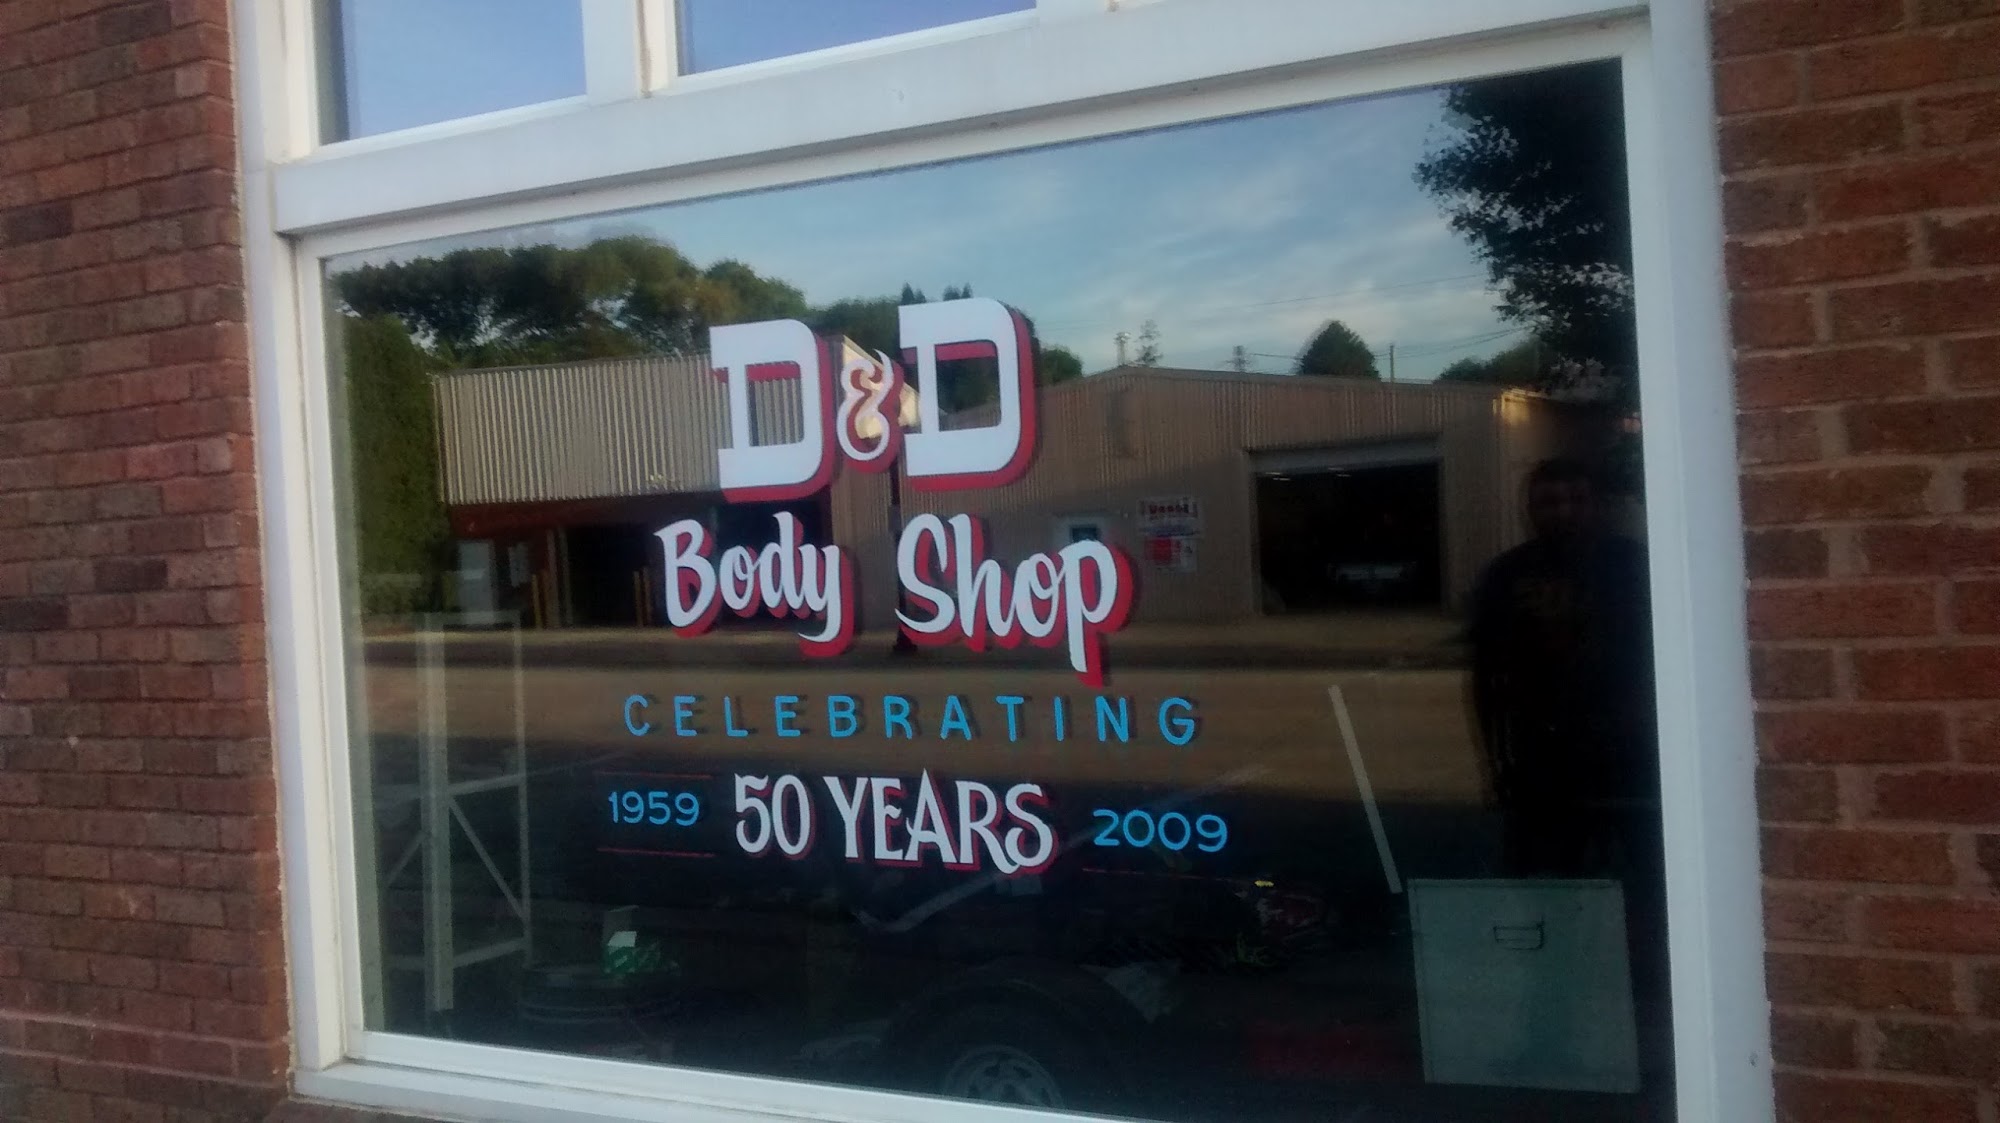 D & D Body Shop